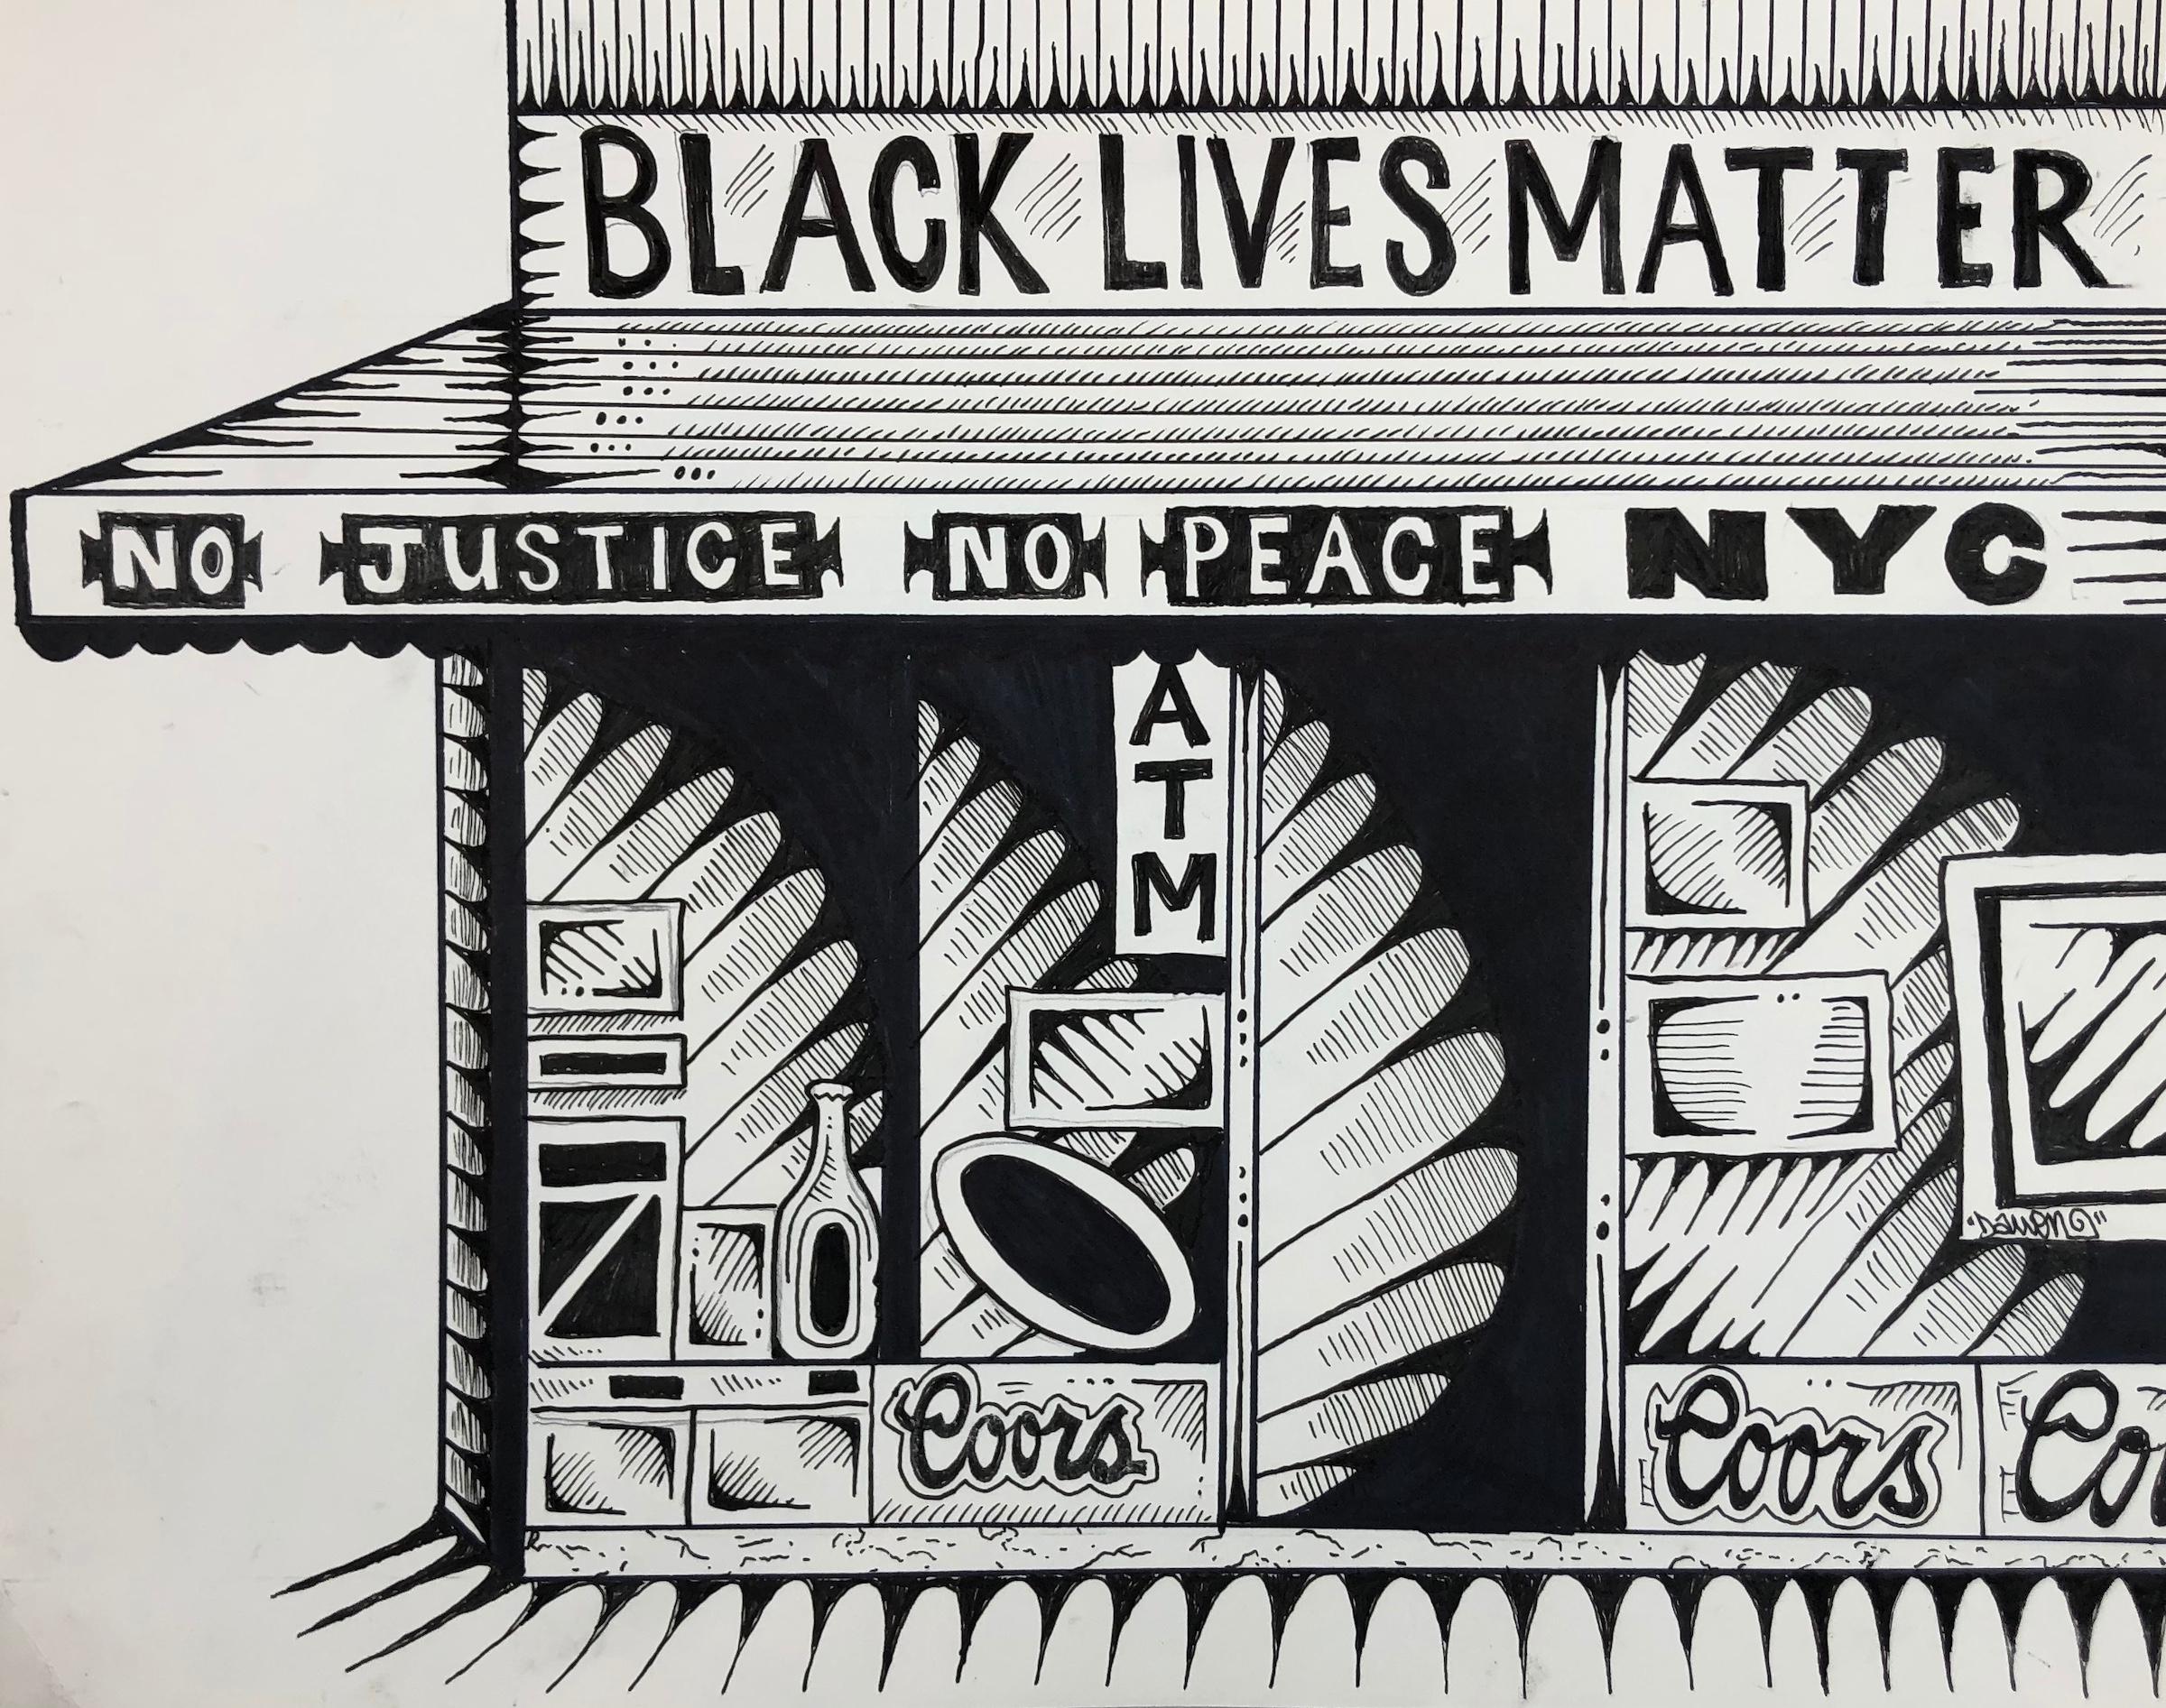 Black Lives Matter - Art by Damon Johnson